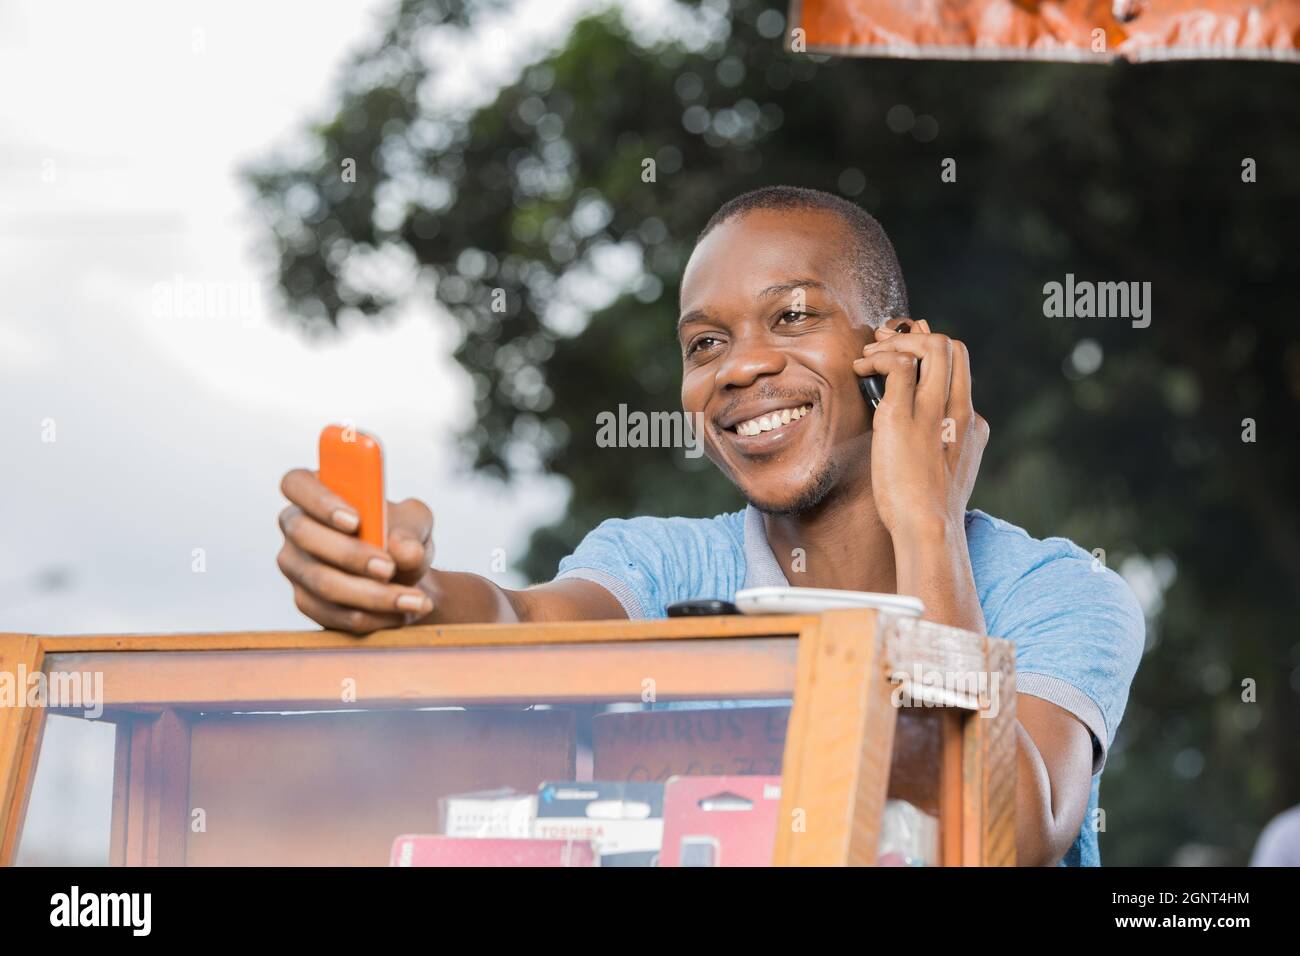 Jeune homme africain en communication Stockfoto